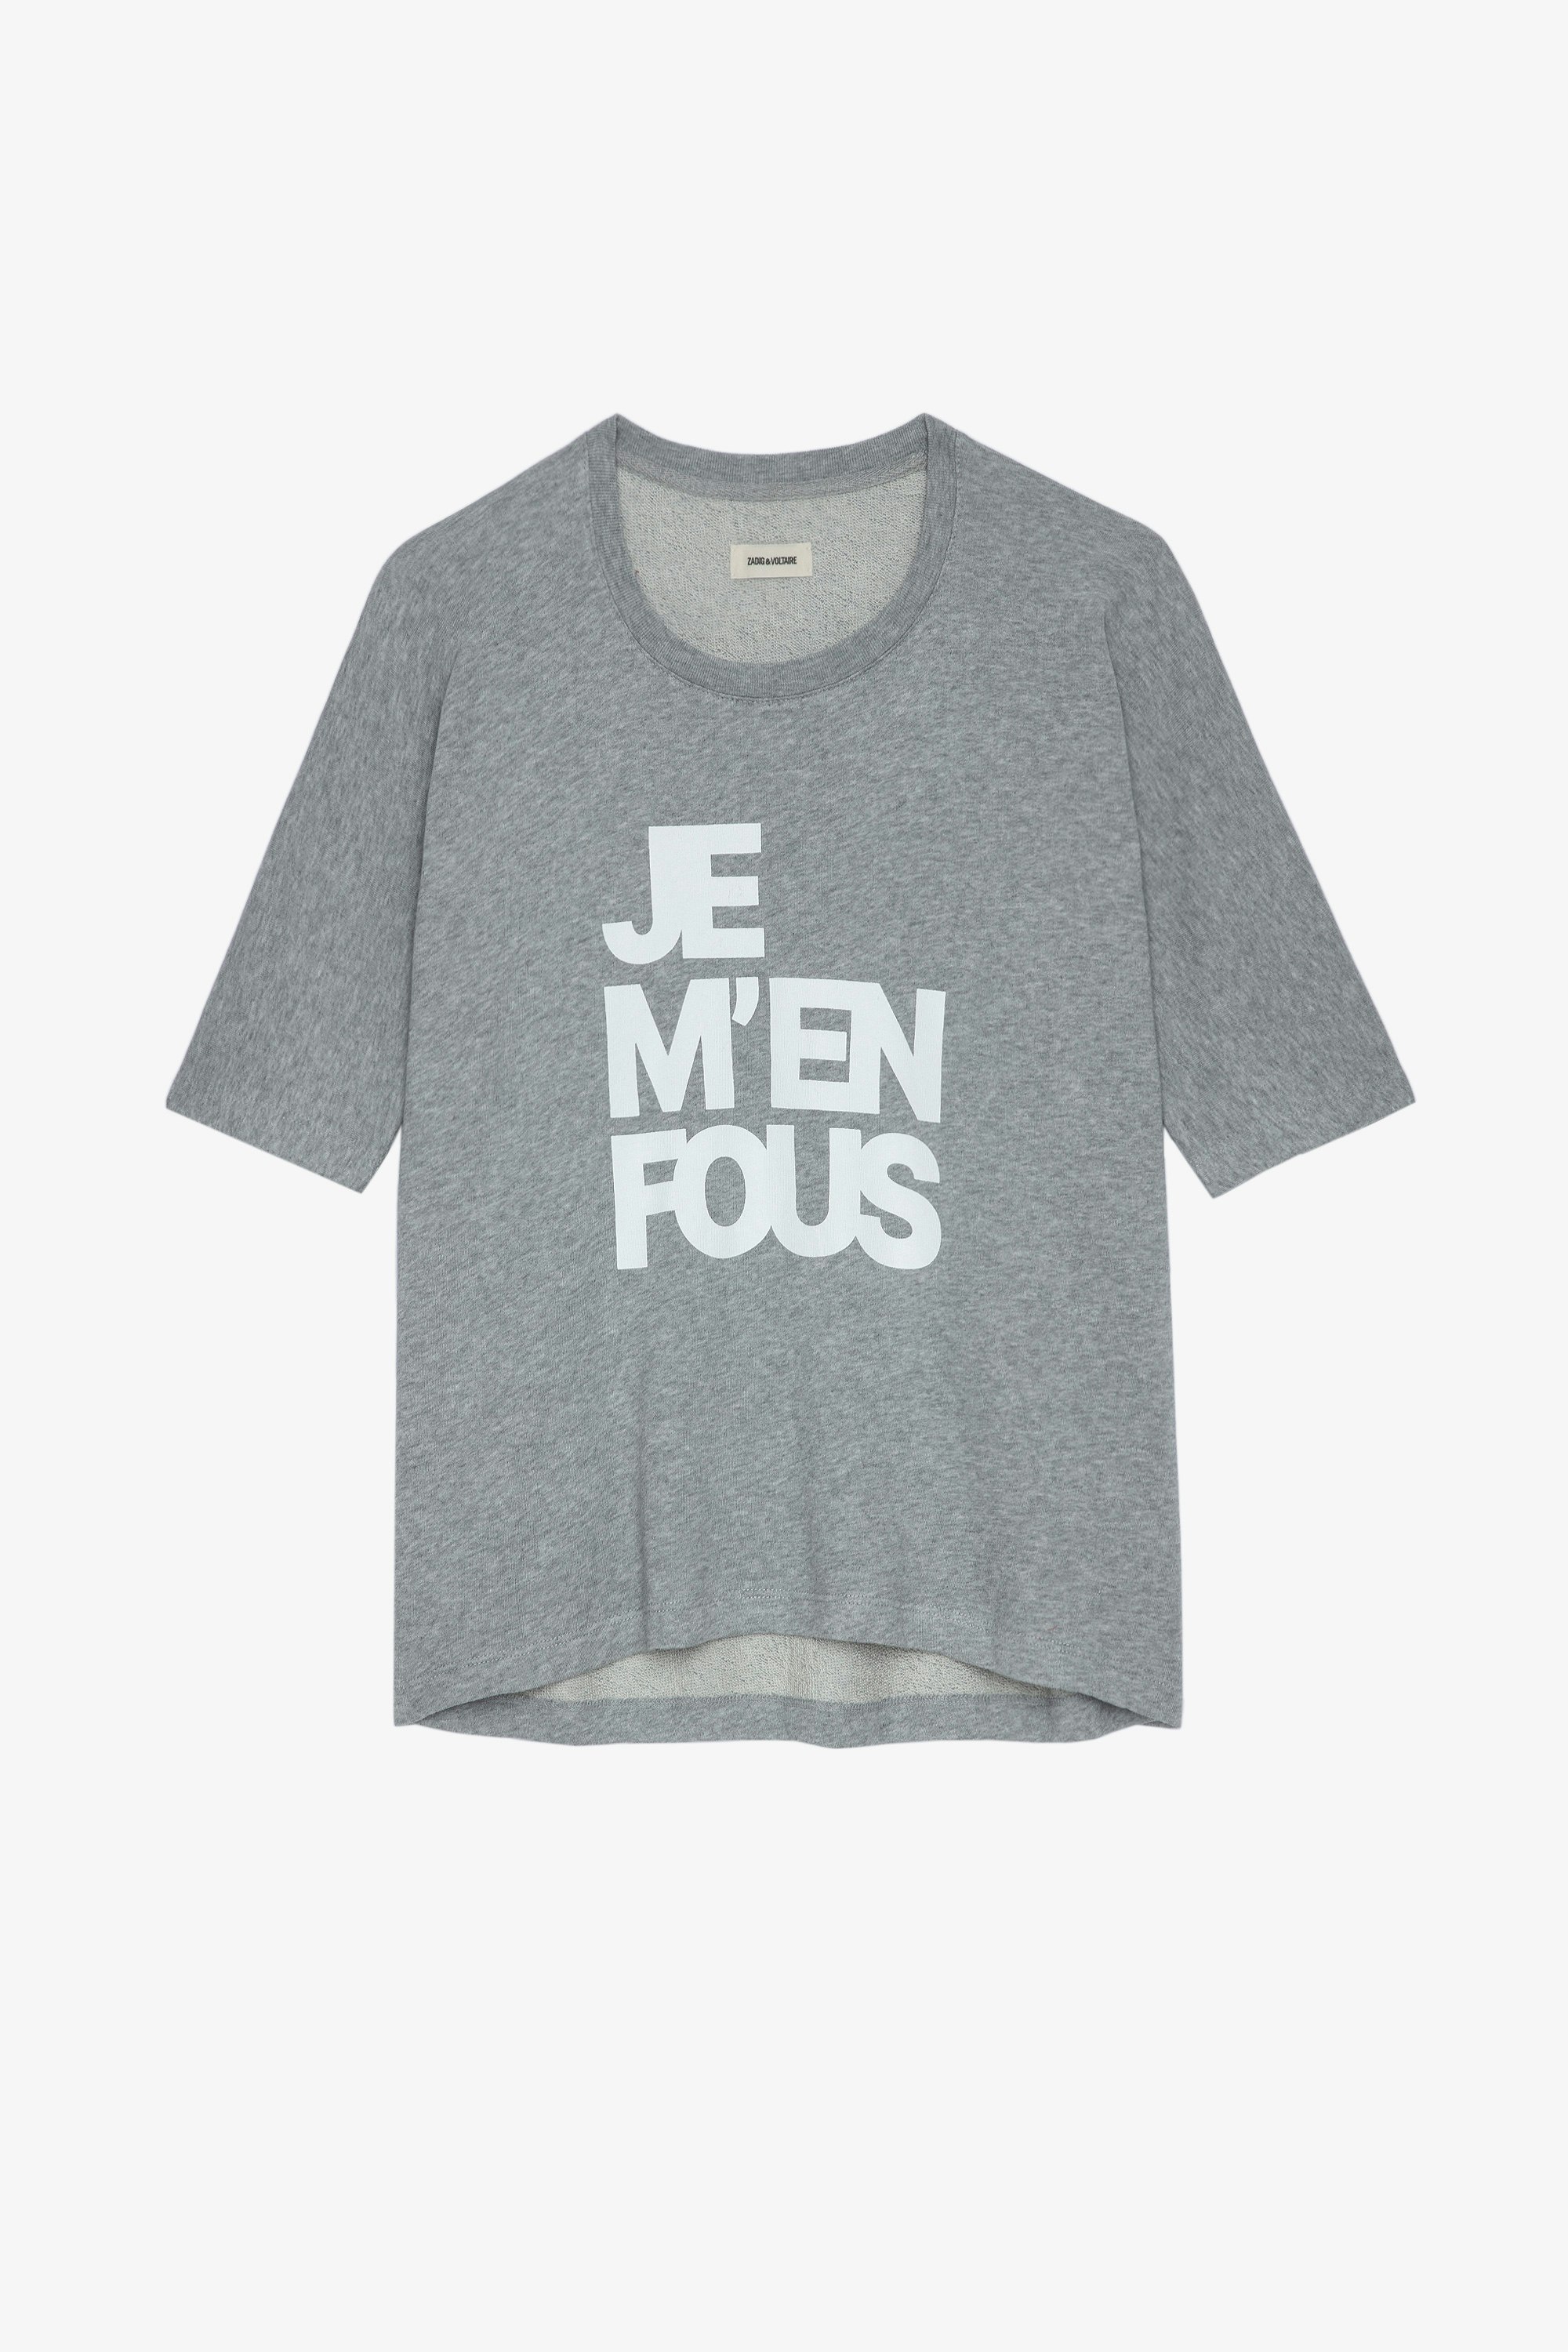 Portland JMF Sweatshirt Women’s grey marl cotton sweatshirt with “Je m’en fous” slogan